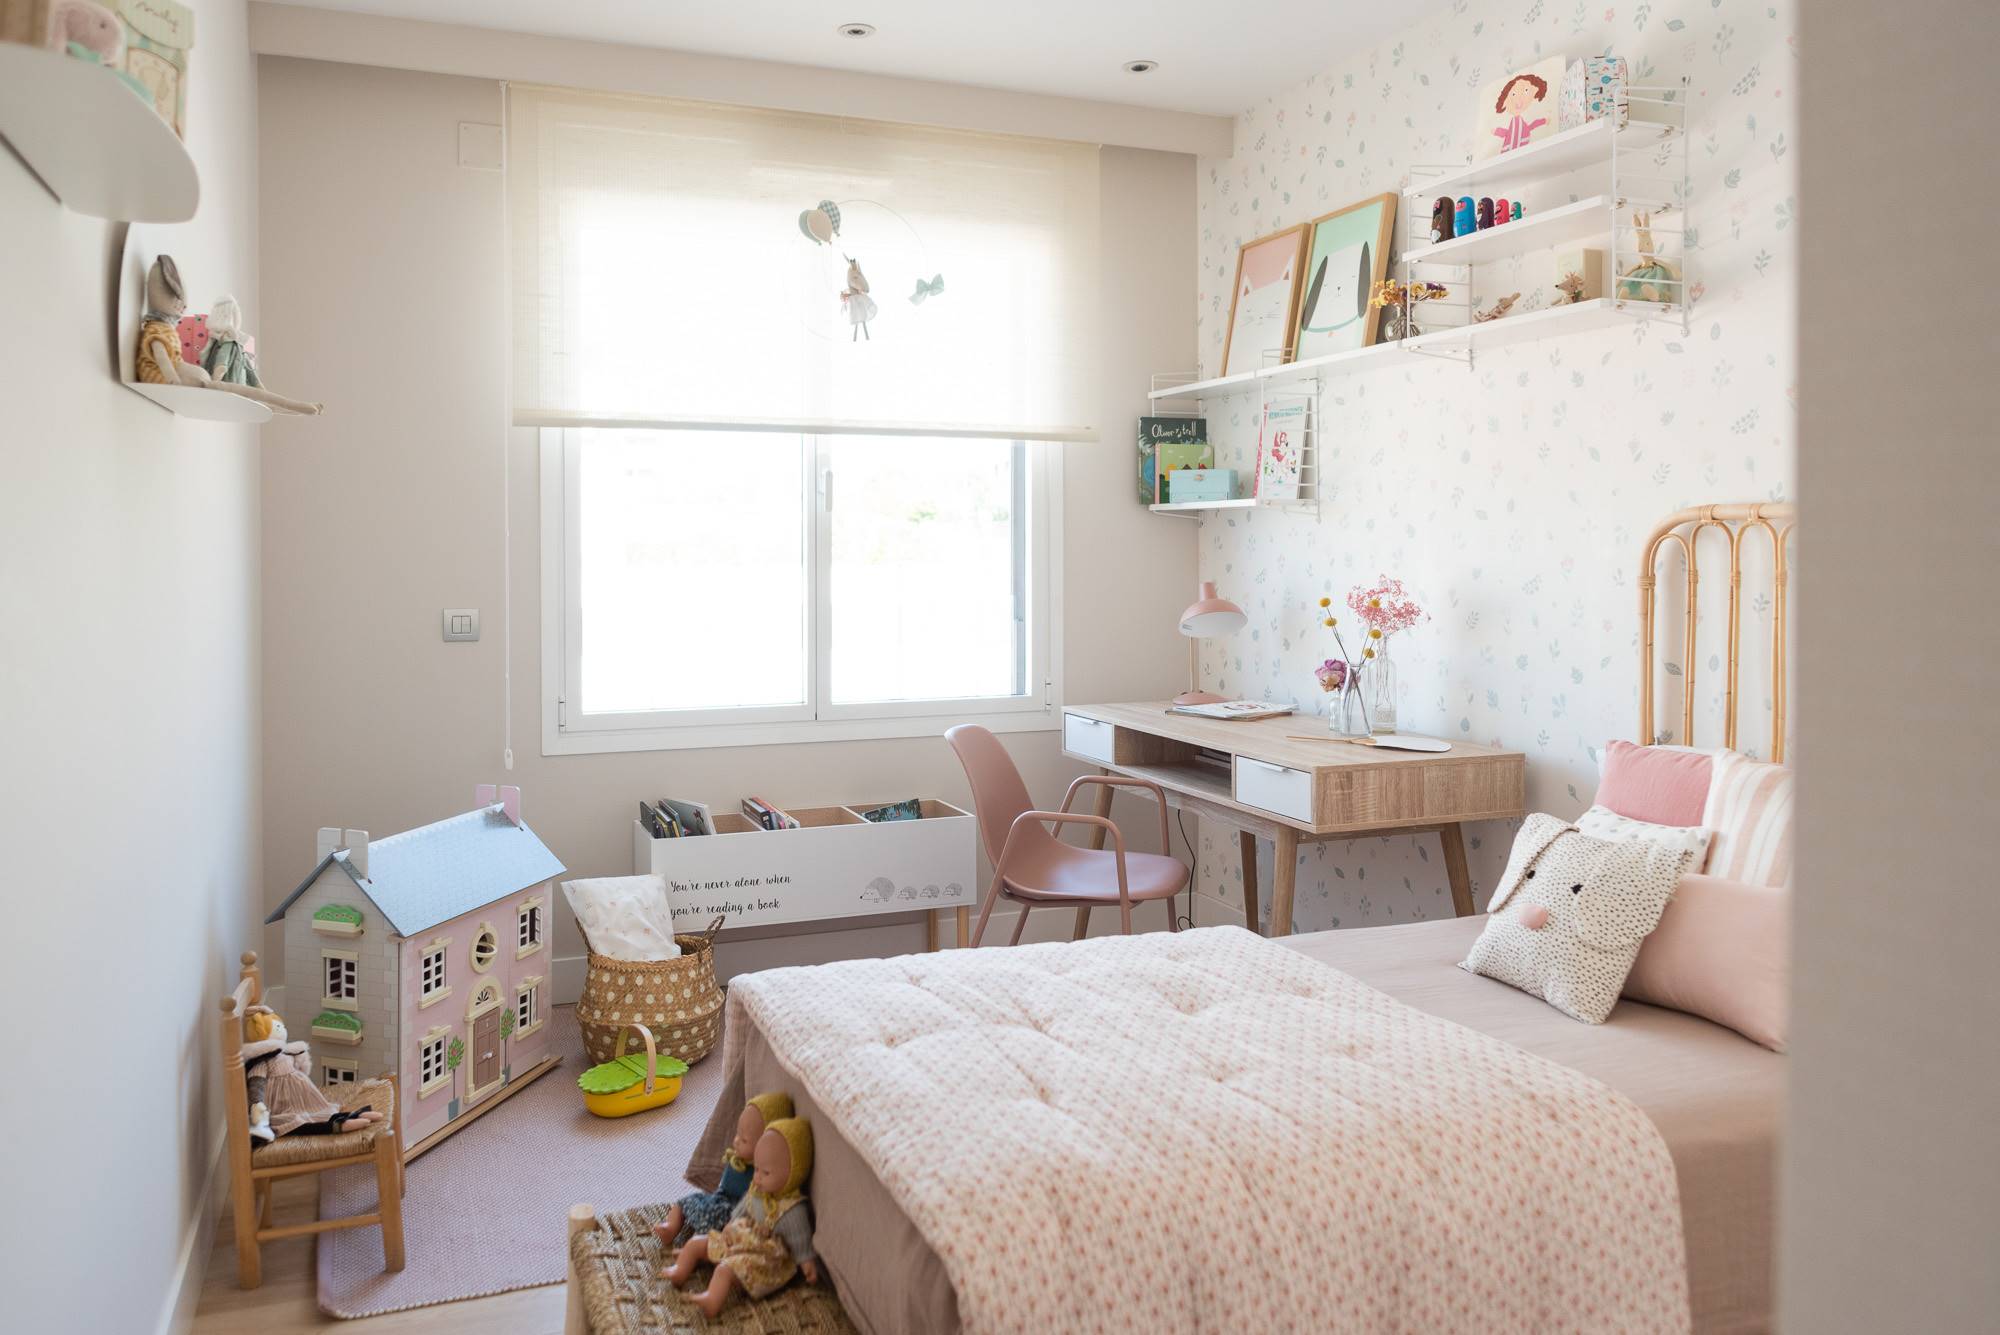 Después: un bonito dormitorio de niña en rosa y con escritorio